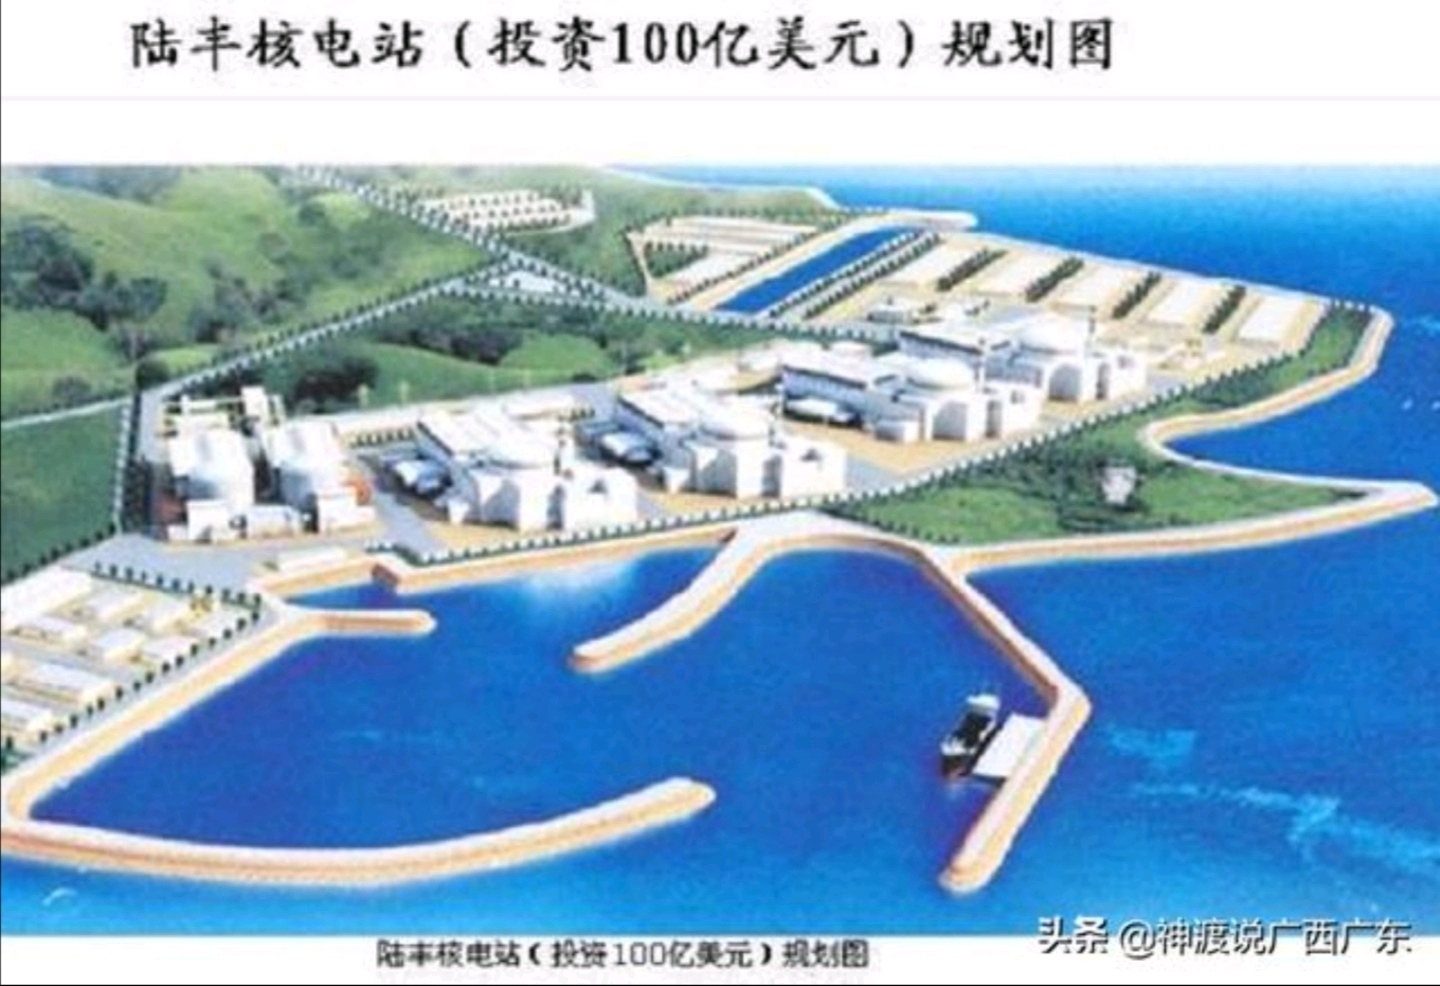 陆丰核电站第六座:海丰核电站海丰核电站,位于广东省汕尾市深汕特别